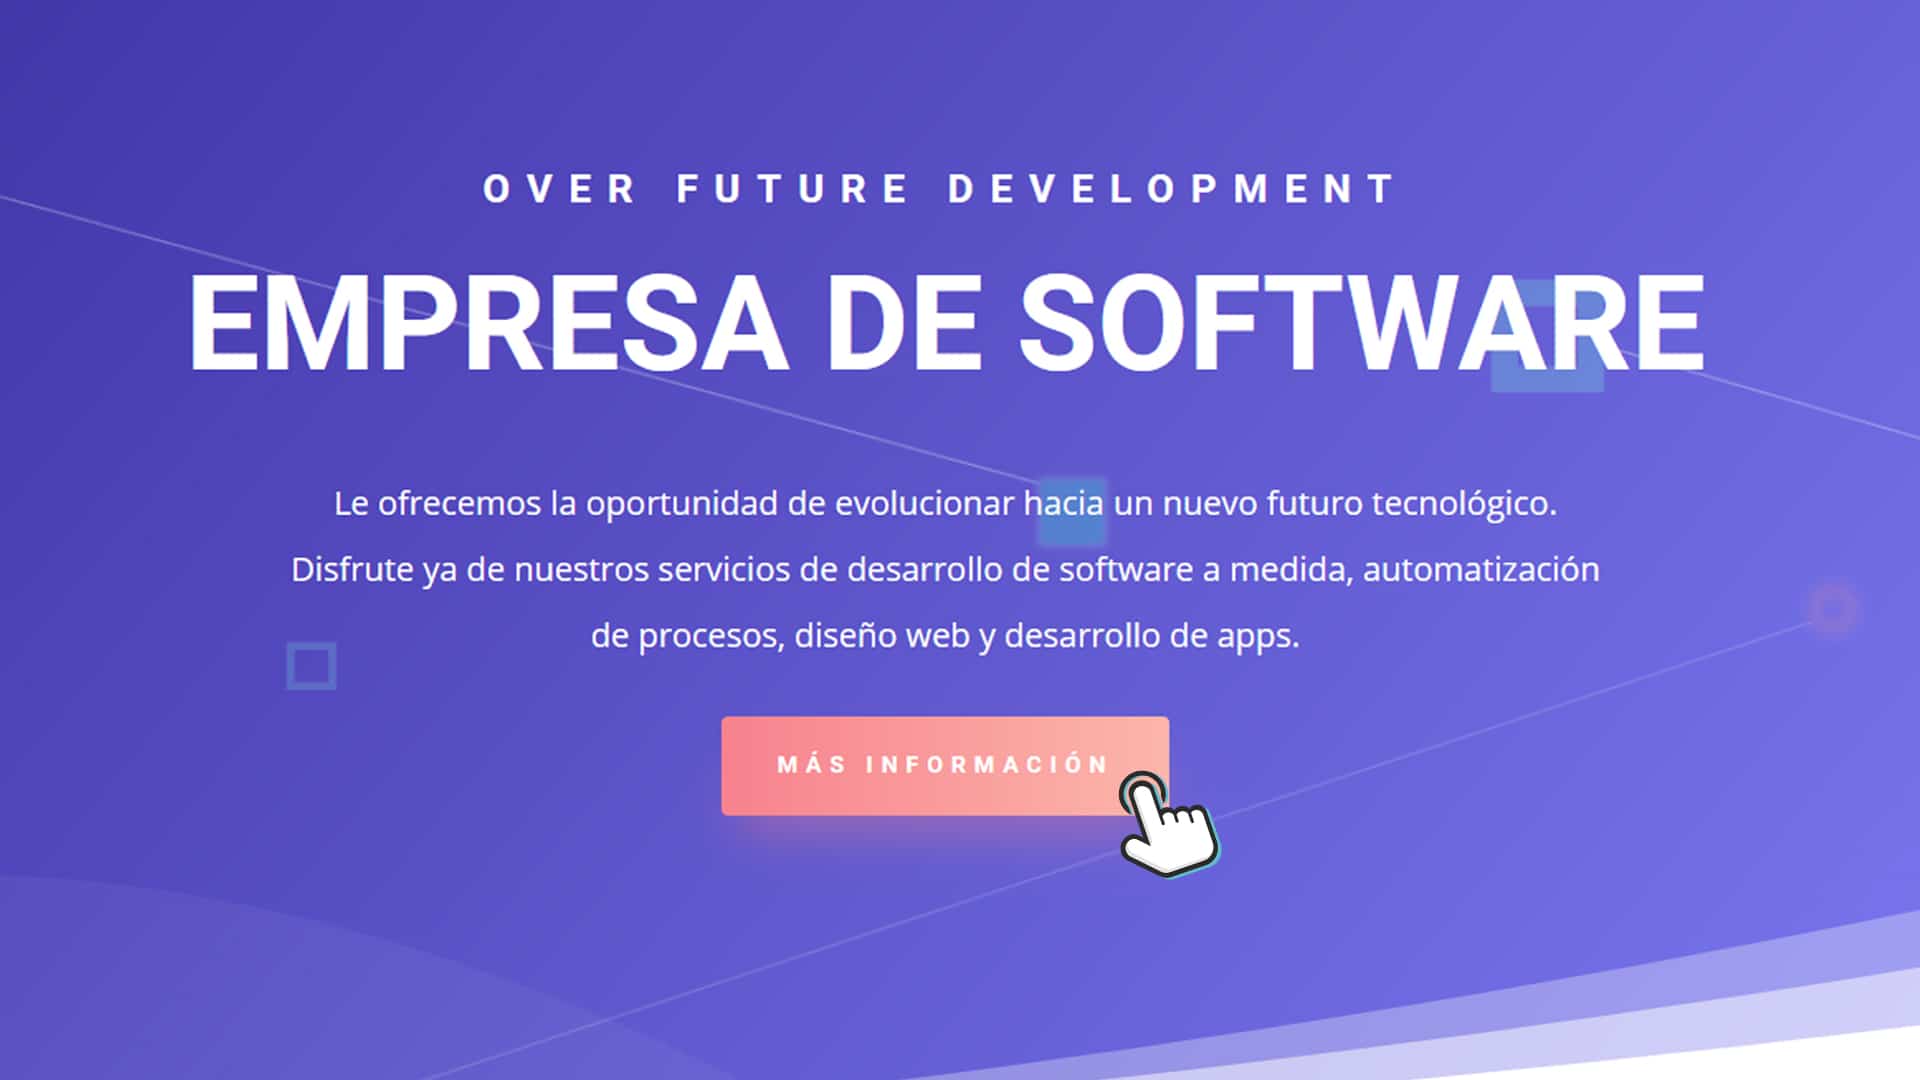 Over Future Development es una nueva marca comercial y empresa de software